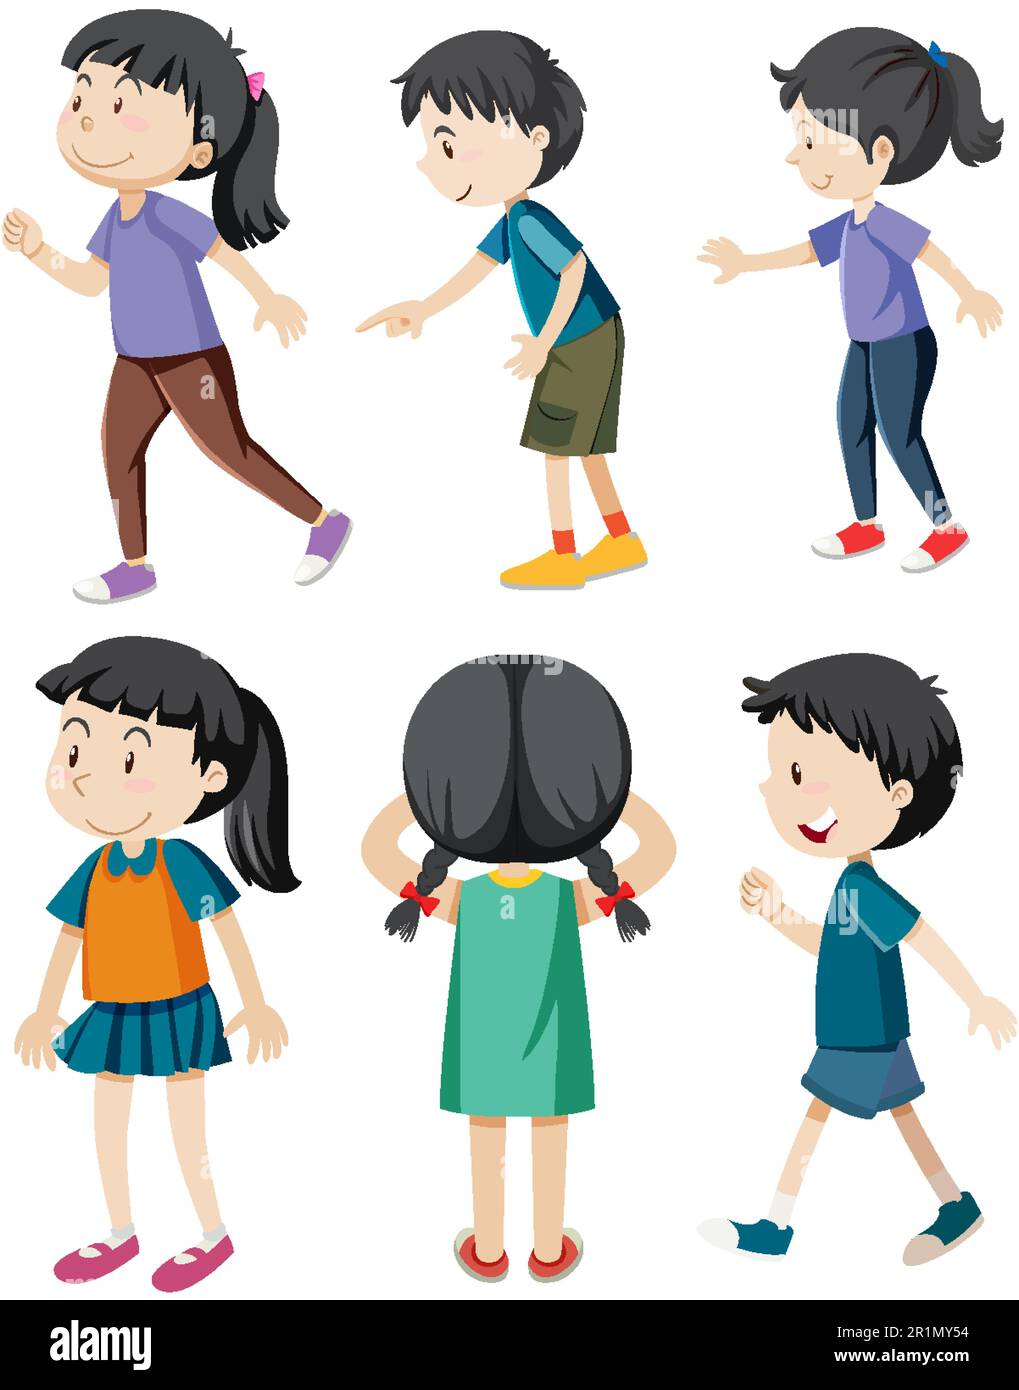 Illustration de différents personnages de dessin animé pour enfants Illustration de Vecteur